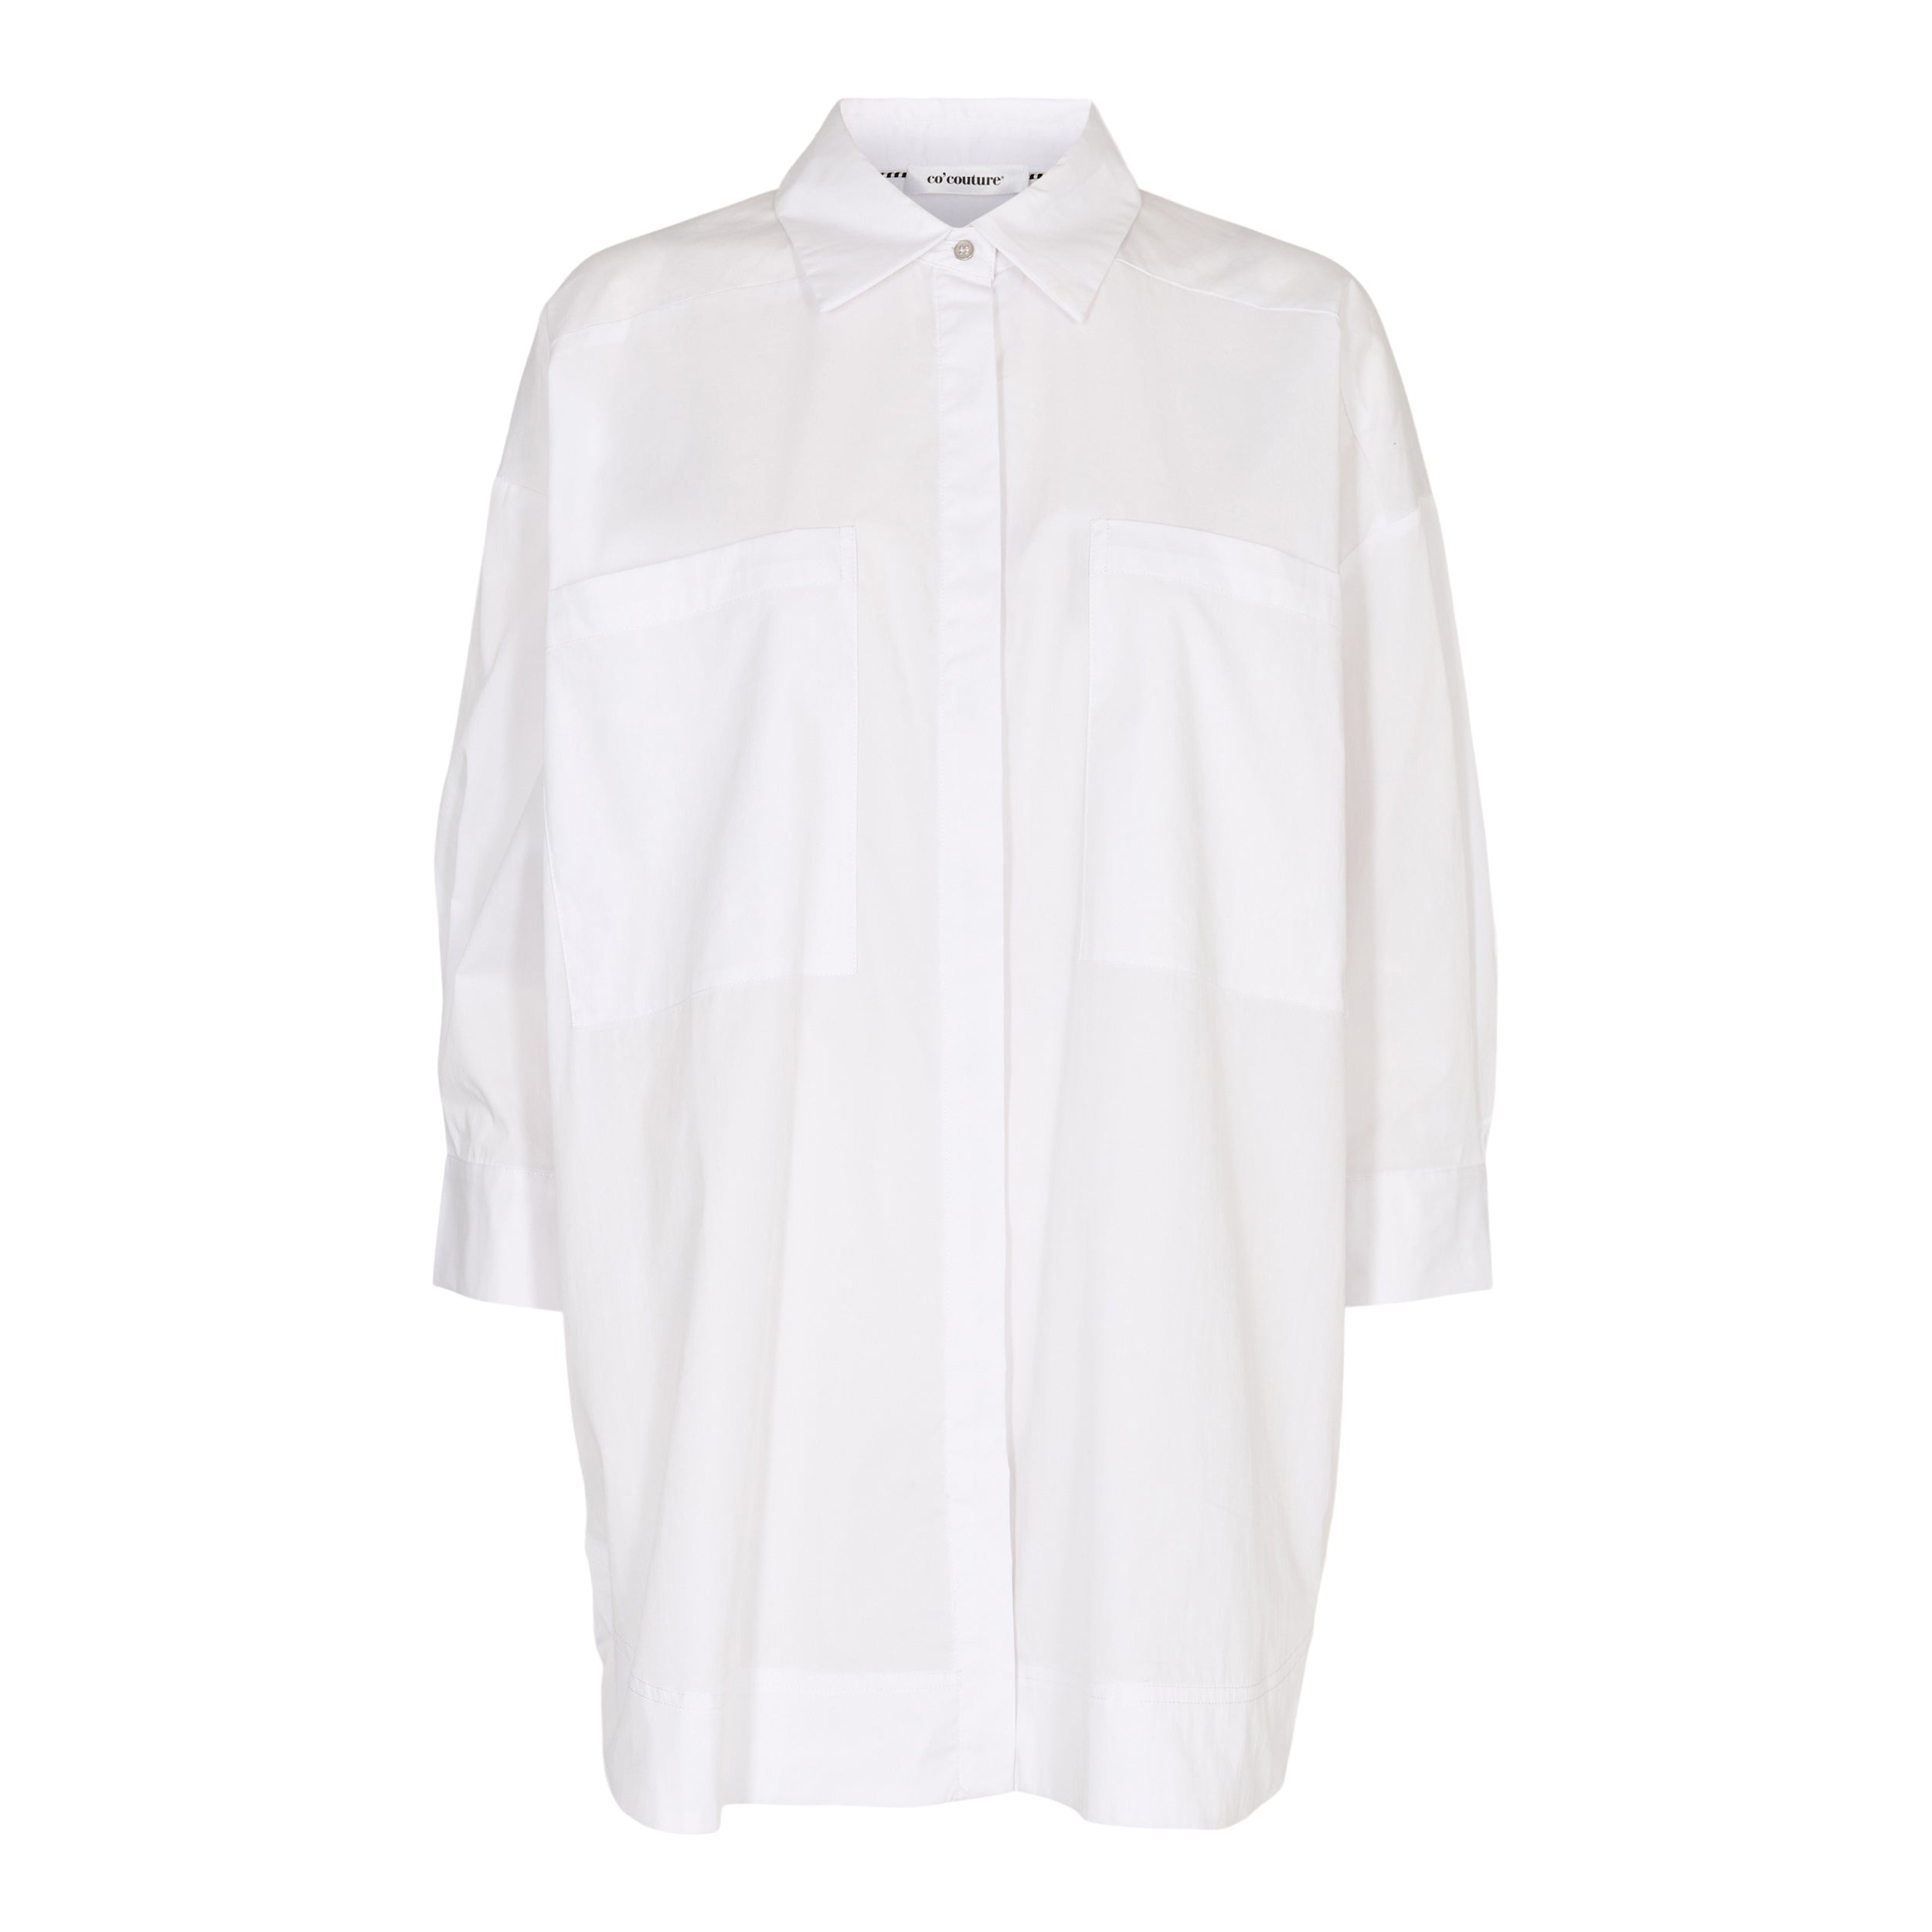 Co'couture Cotton Crisp Pocket Shirt